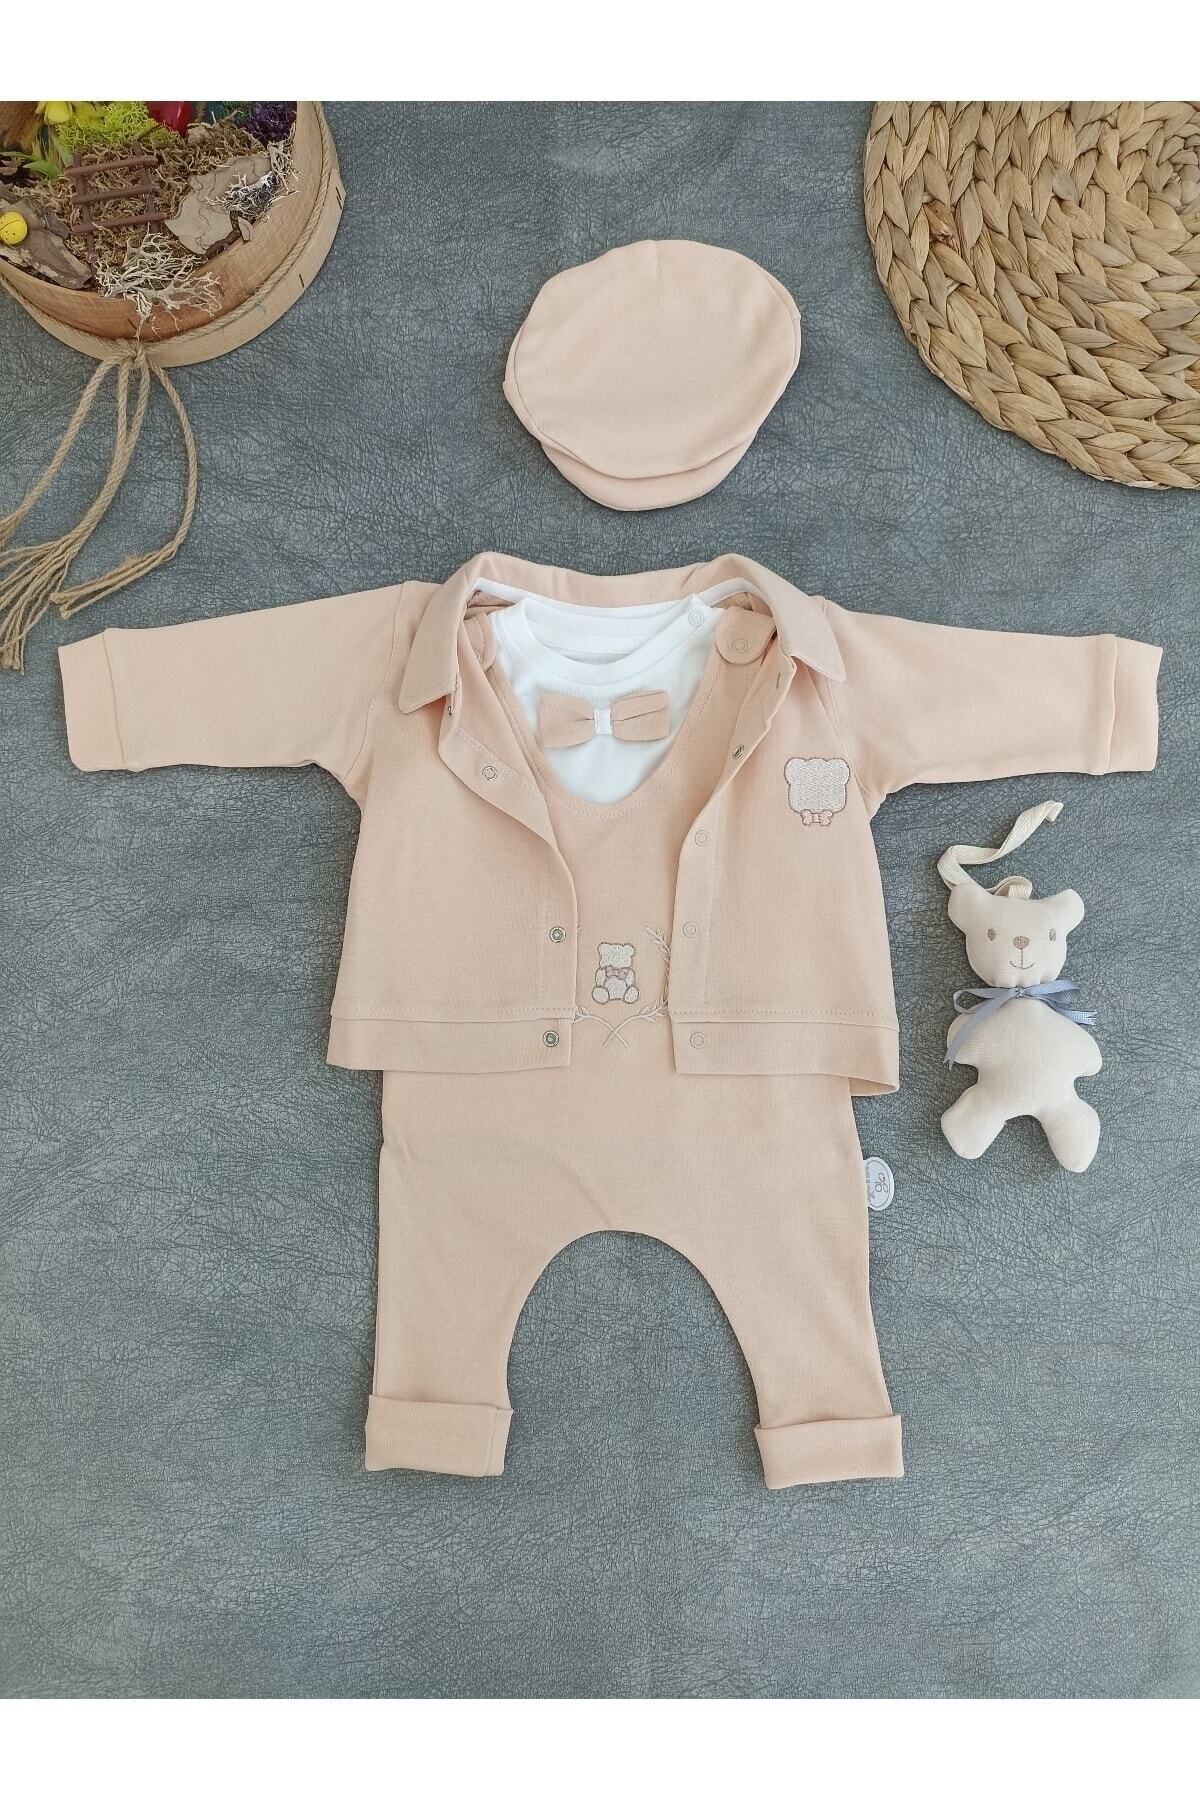 Tomuycuk Altınbaşak Oyuncaklı 5li Kız/erkek Bebek Takım Yenidoğan Bebek Takımları Kıyafetleri Bebek Giyim